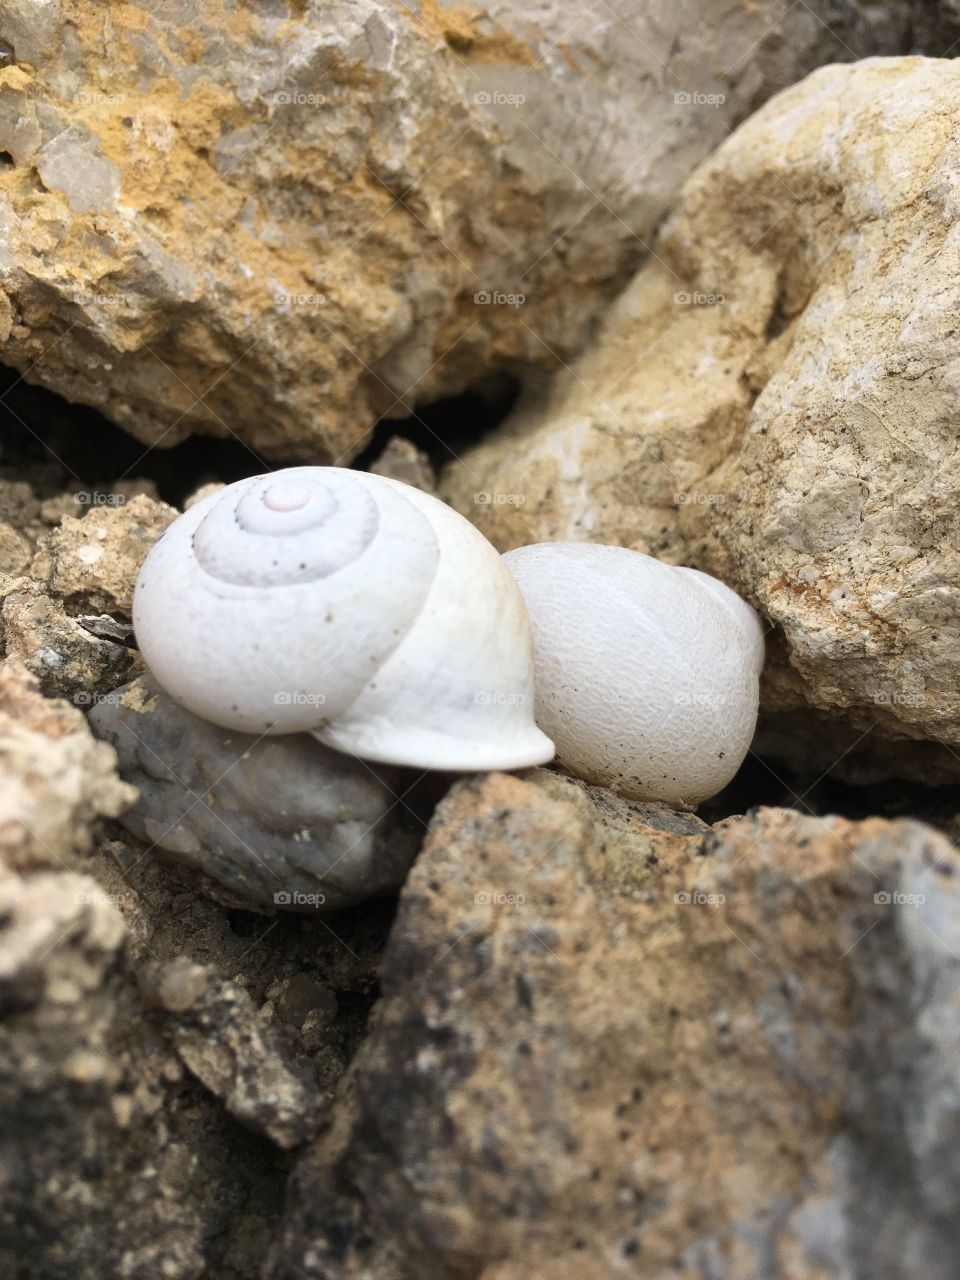 Snails on stone